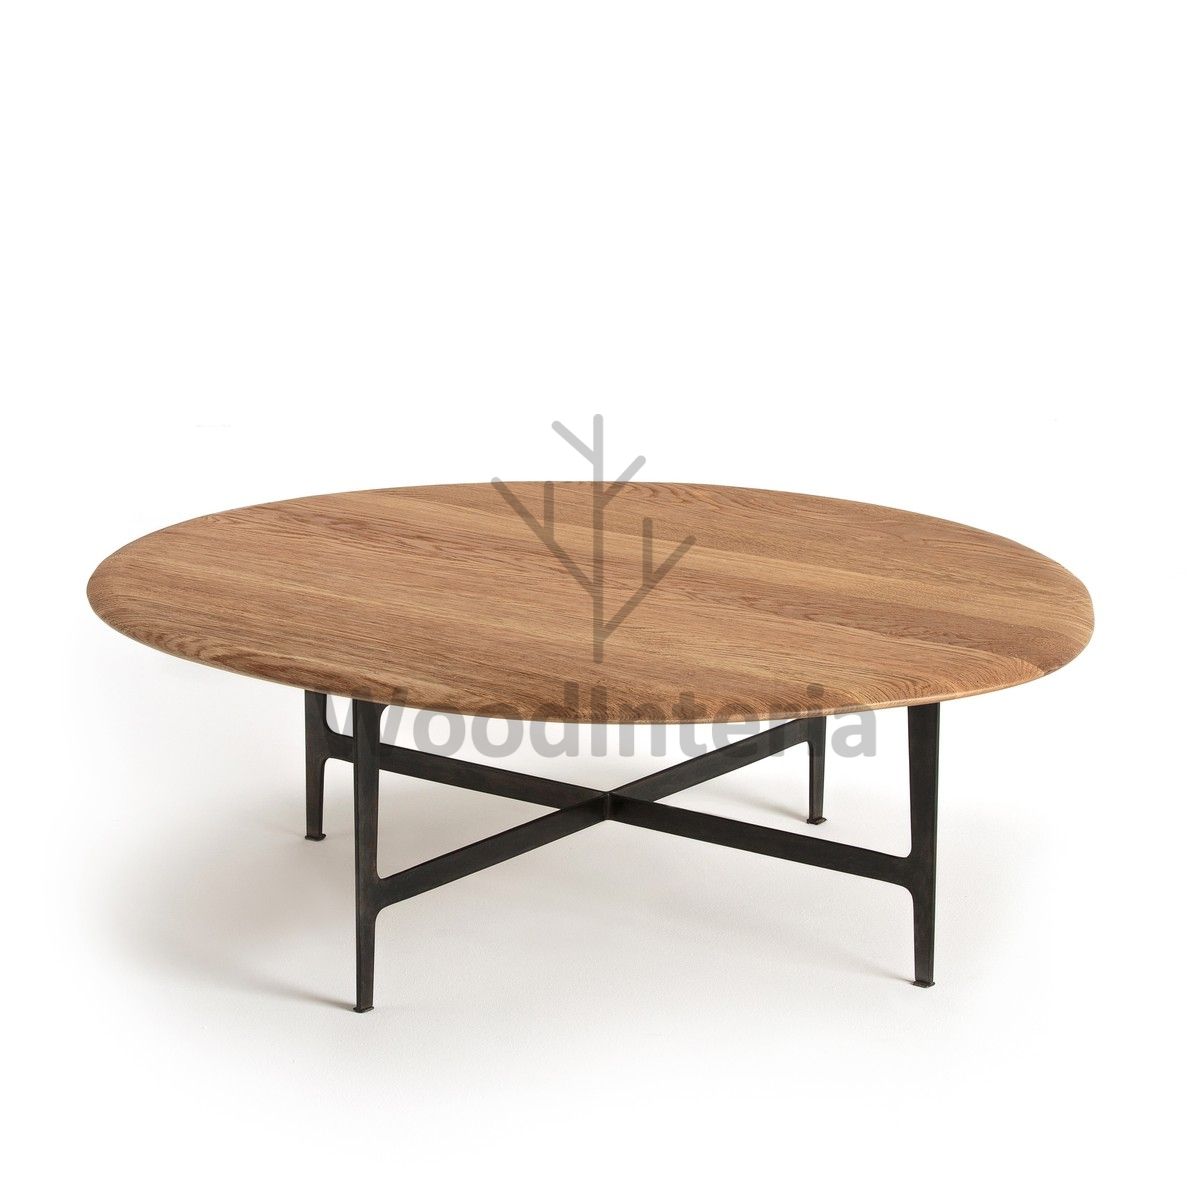 фото кофейный столик olivia large в интерьере лофт эко | WoodInteria